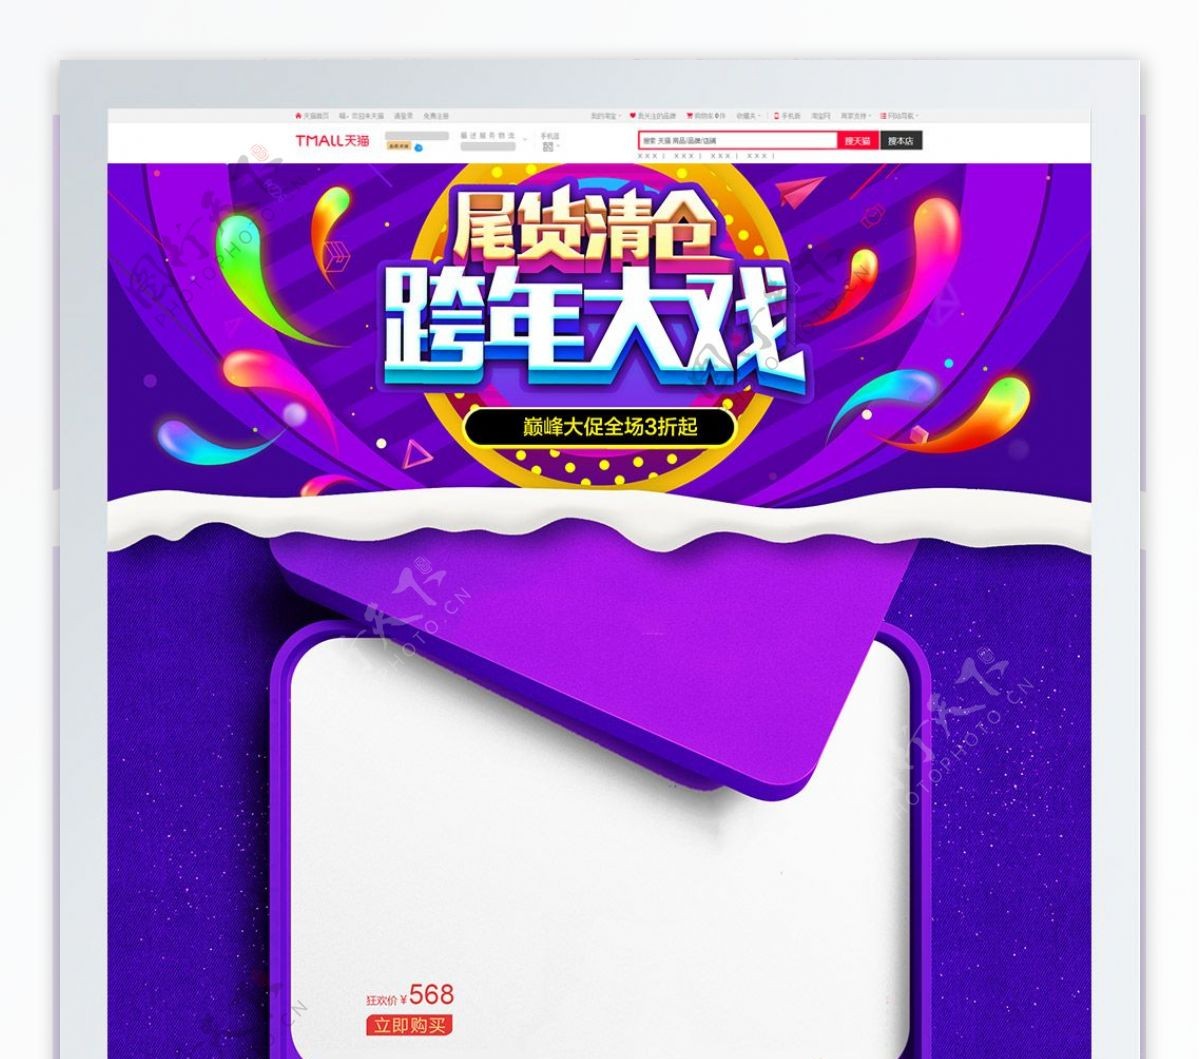 紫色天猫跨年狂欢节礼盒促销首页模版